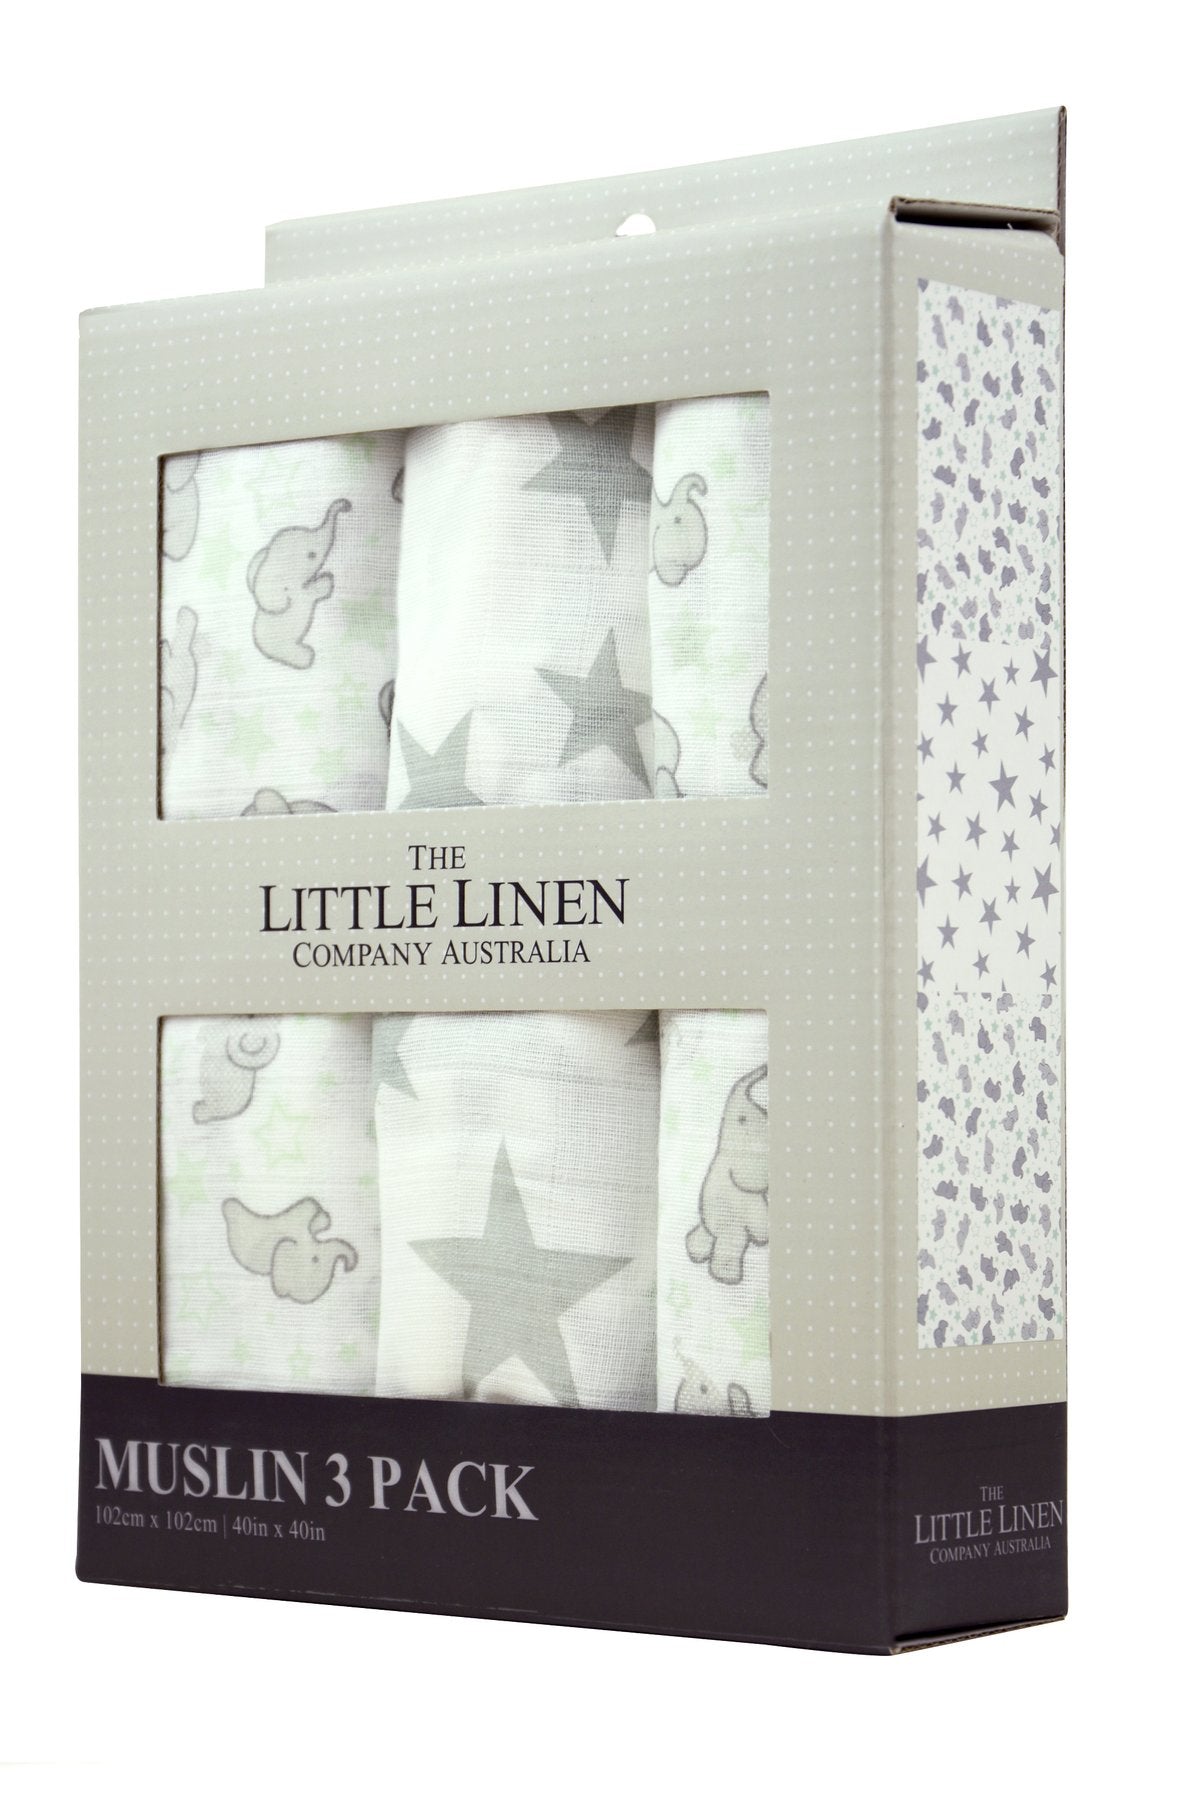 Little Linen Cotton Muslin Wrap 3 Pack Set - Mint Elephant